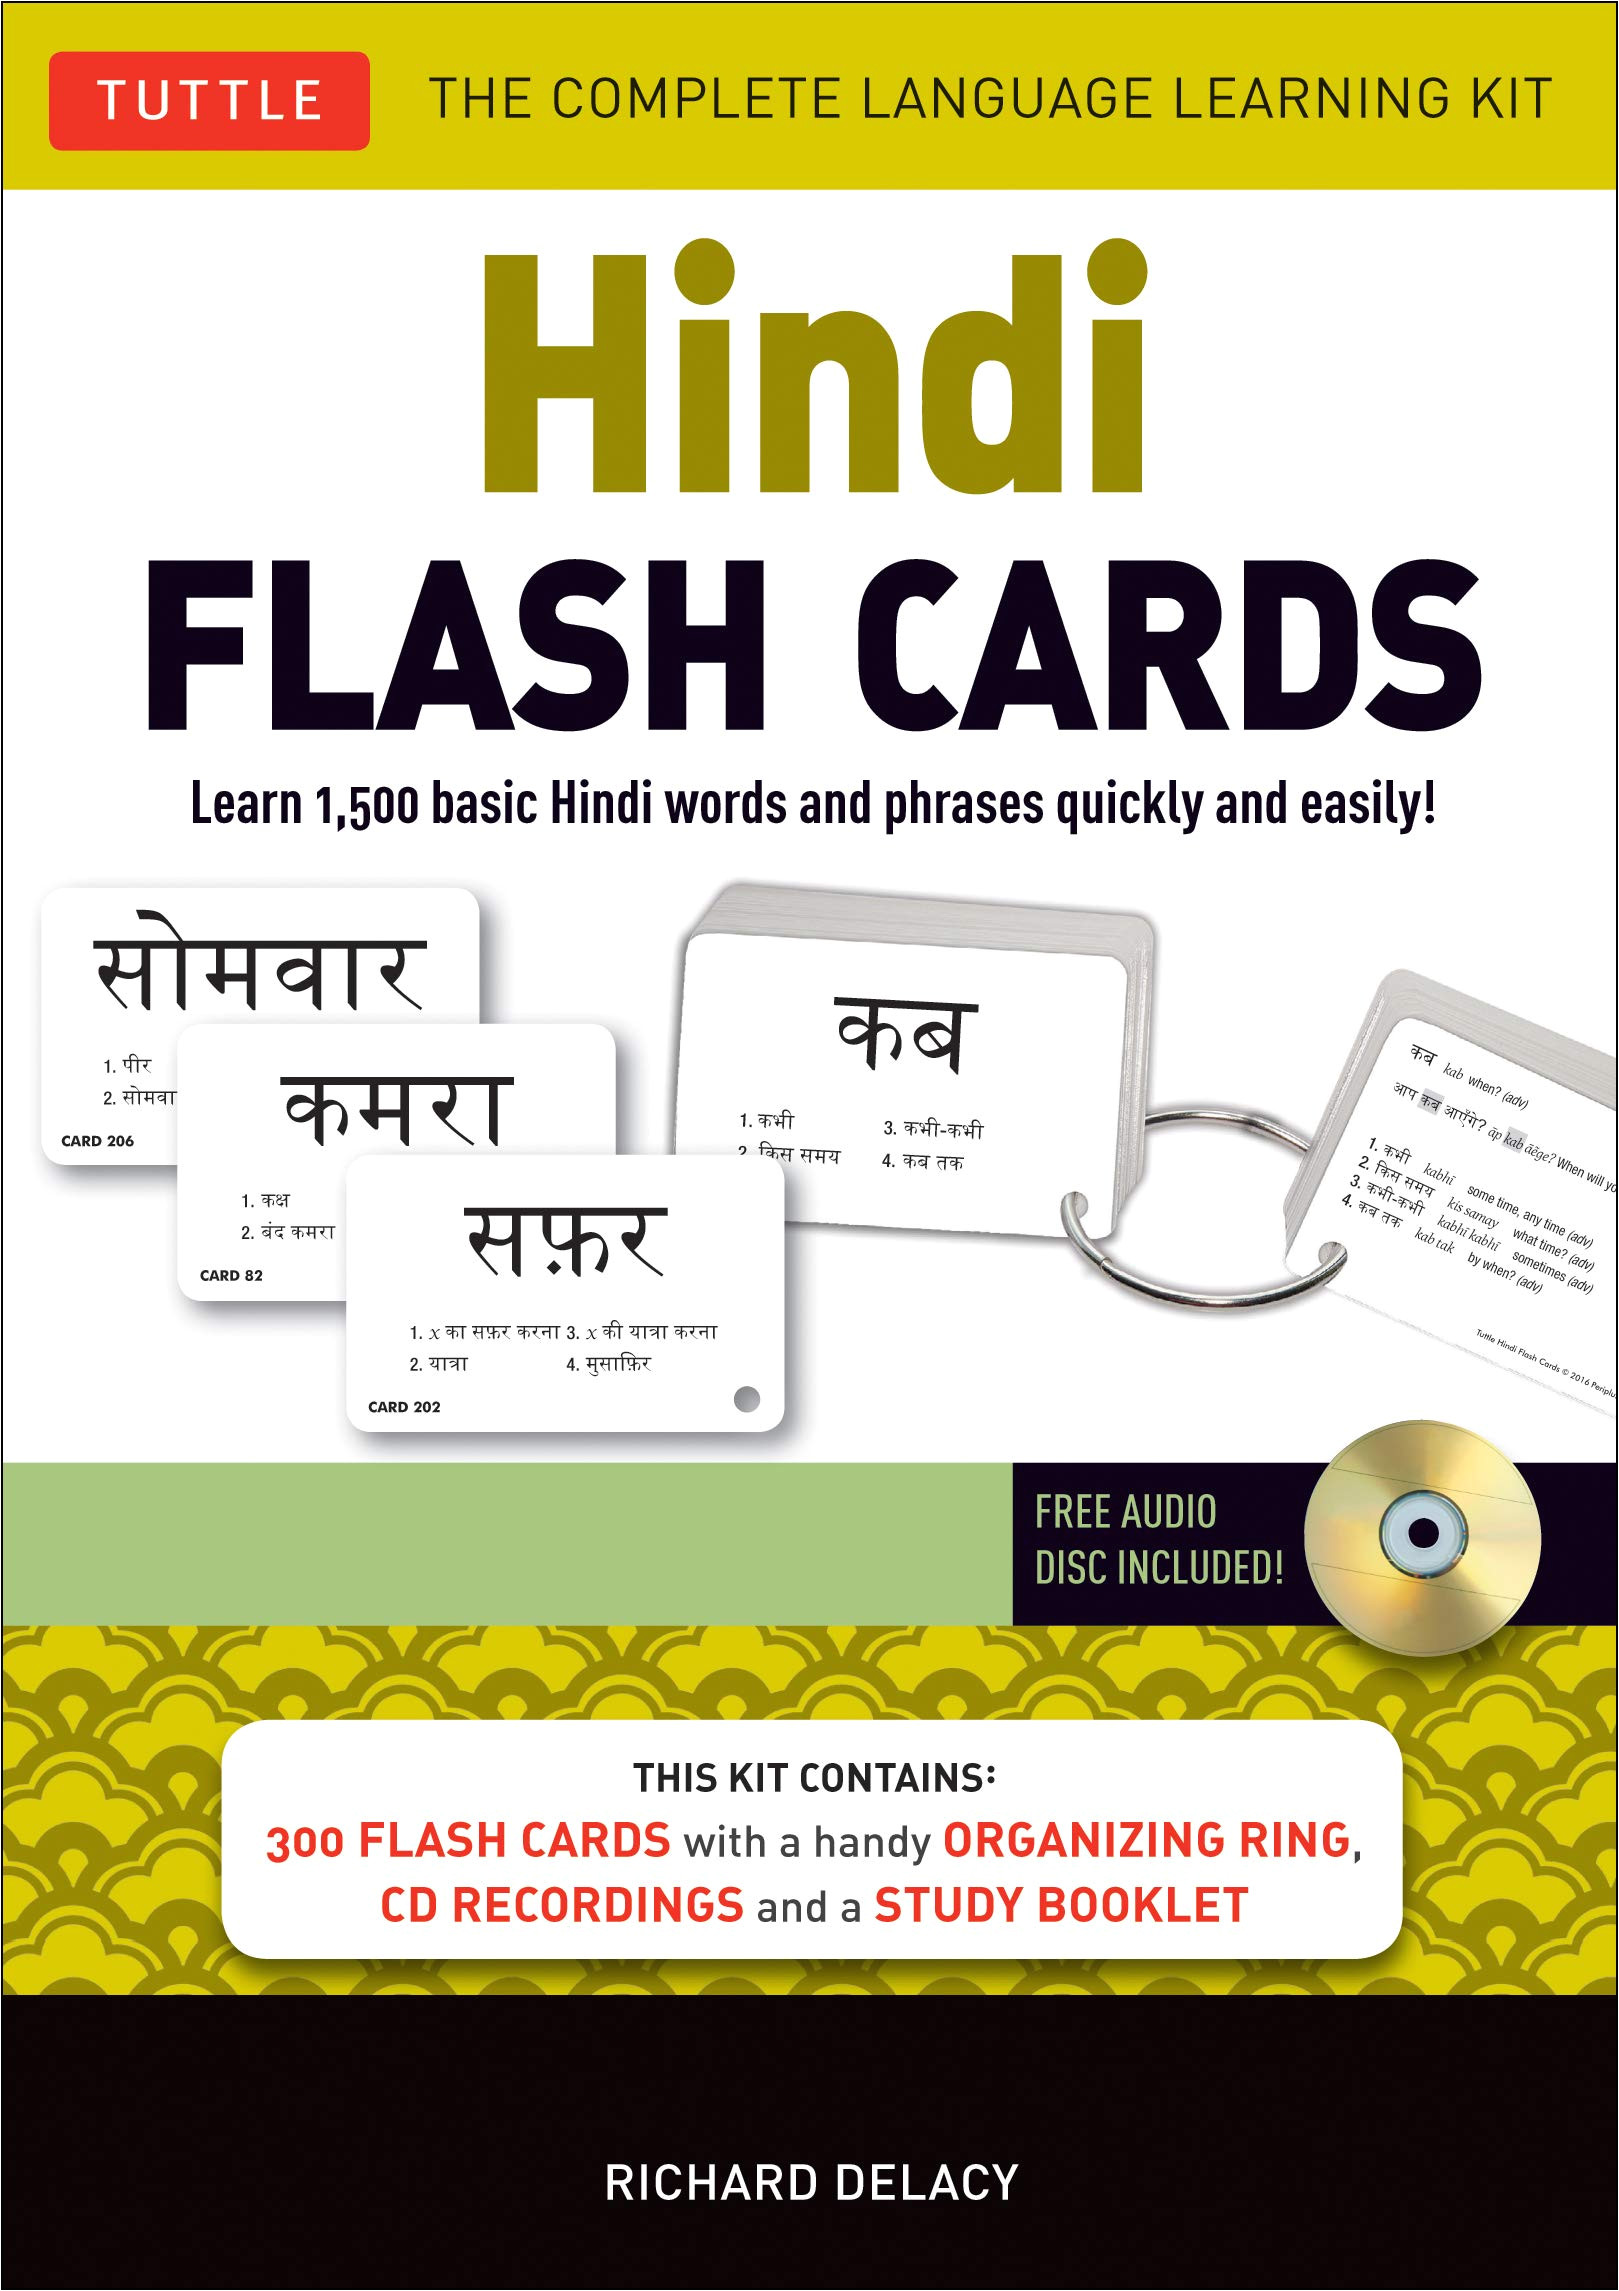 Card Holder Name In Hindi Hindi Flash Cards Kit Learn 1 500 Basic Hindi Words and